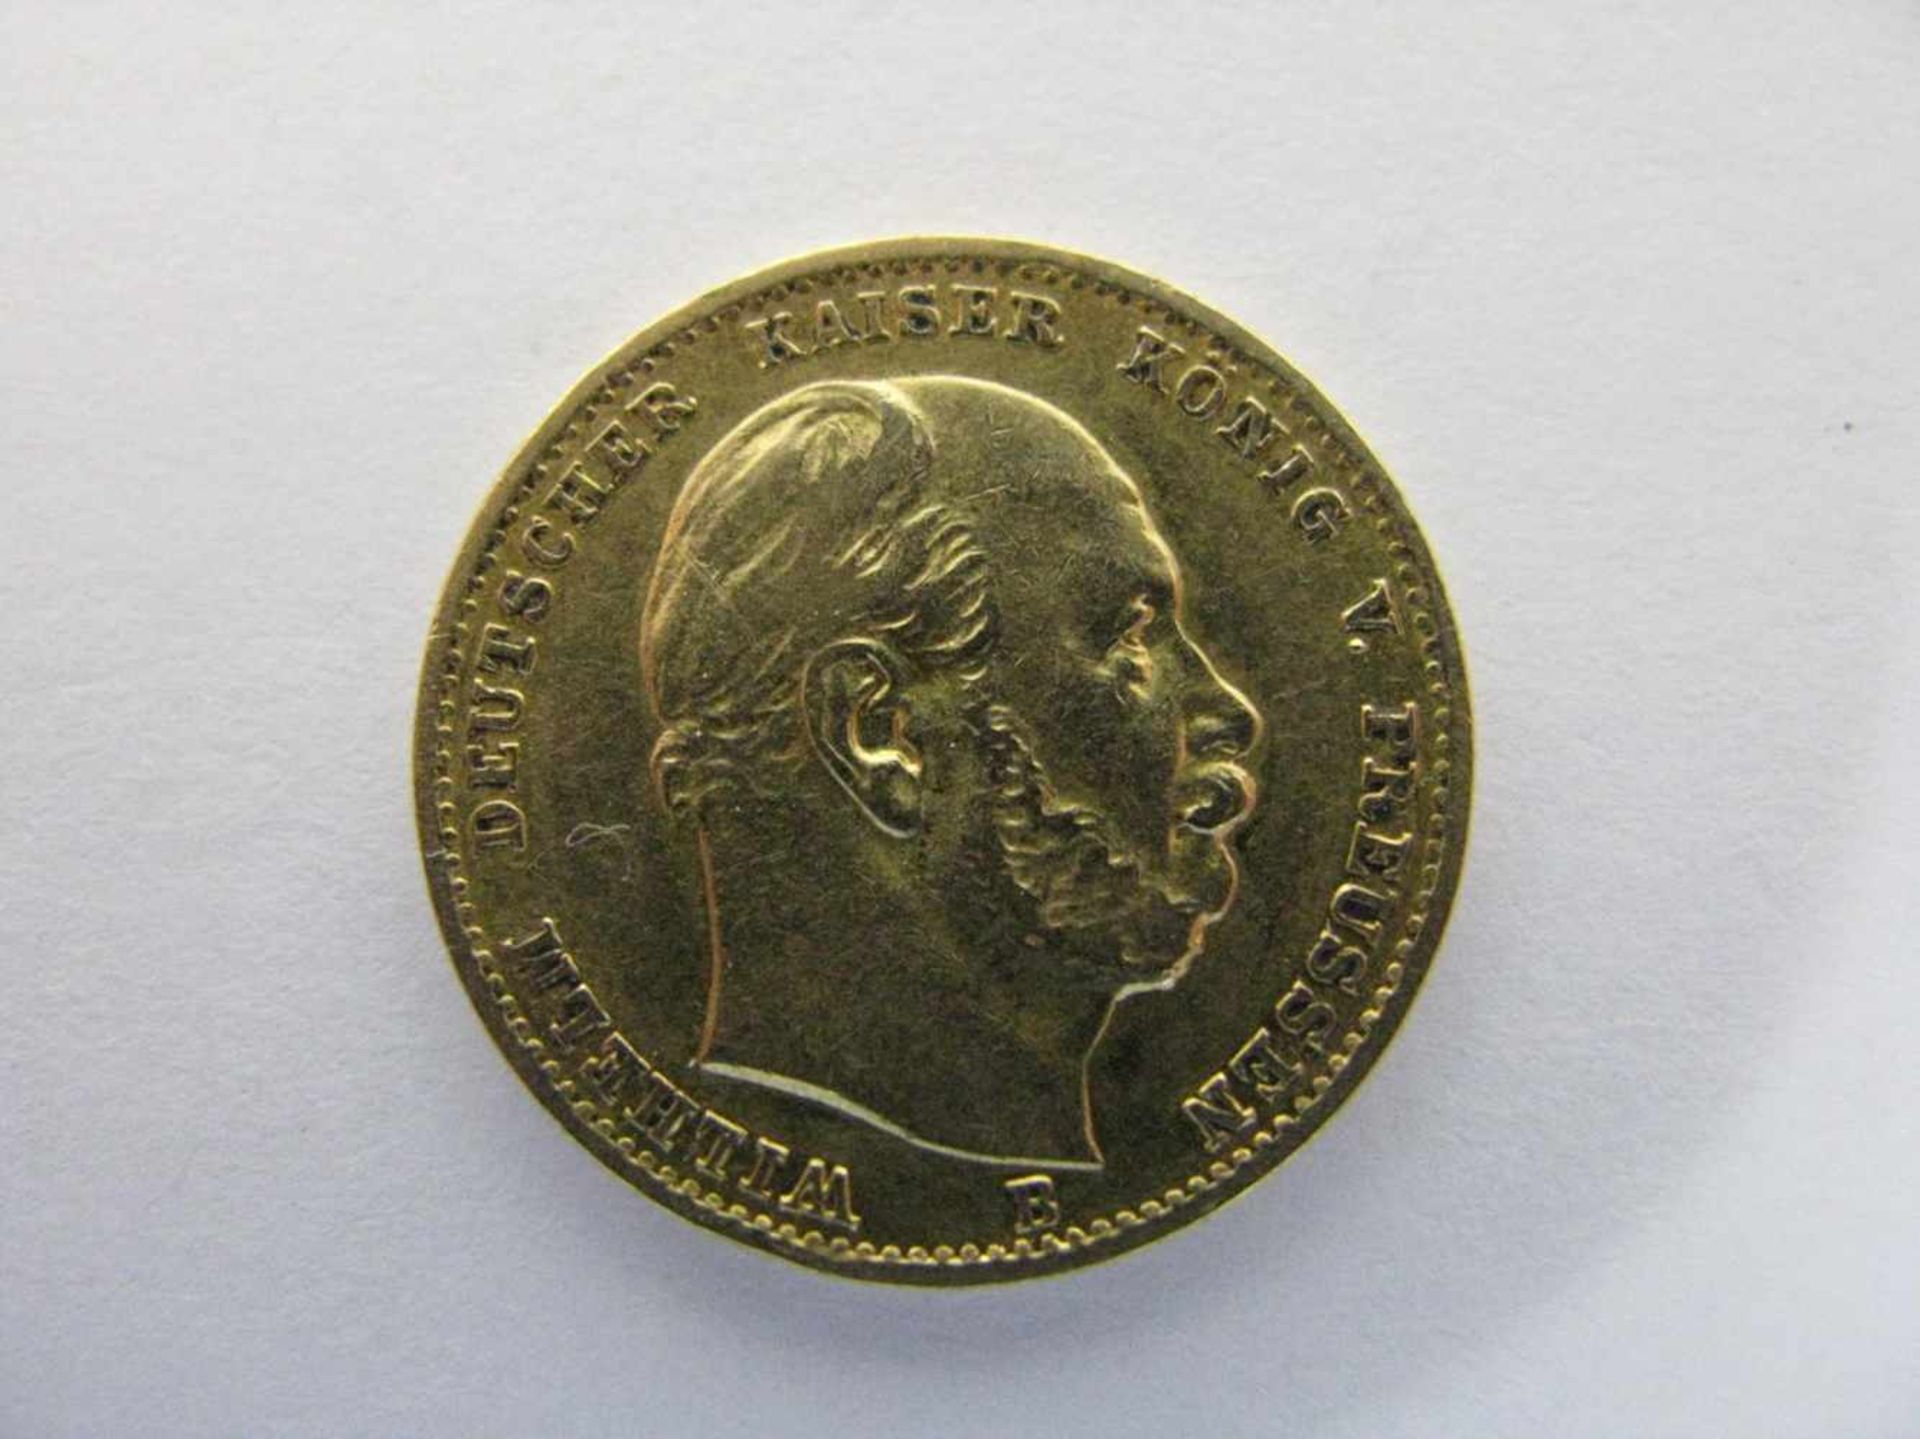 Goldmünze, 10 Mark, Kaiser Wilhelm von Preußen, 1874 B, 3,94 g, d 1,9 cm.- - -19.00 % buyer's